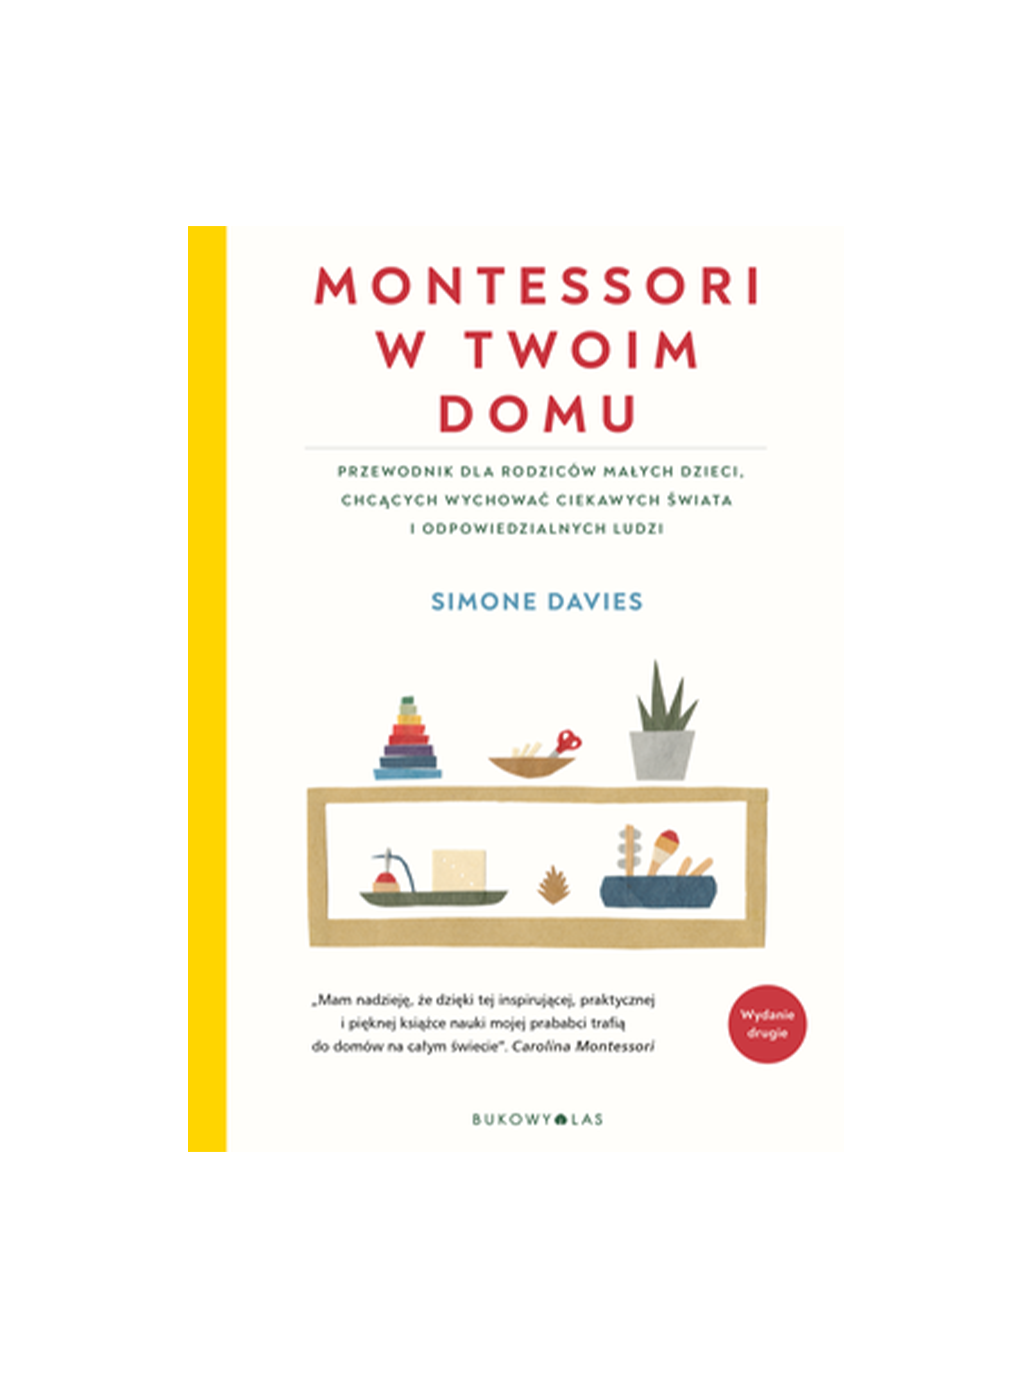 Casa Montessori con Twoim